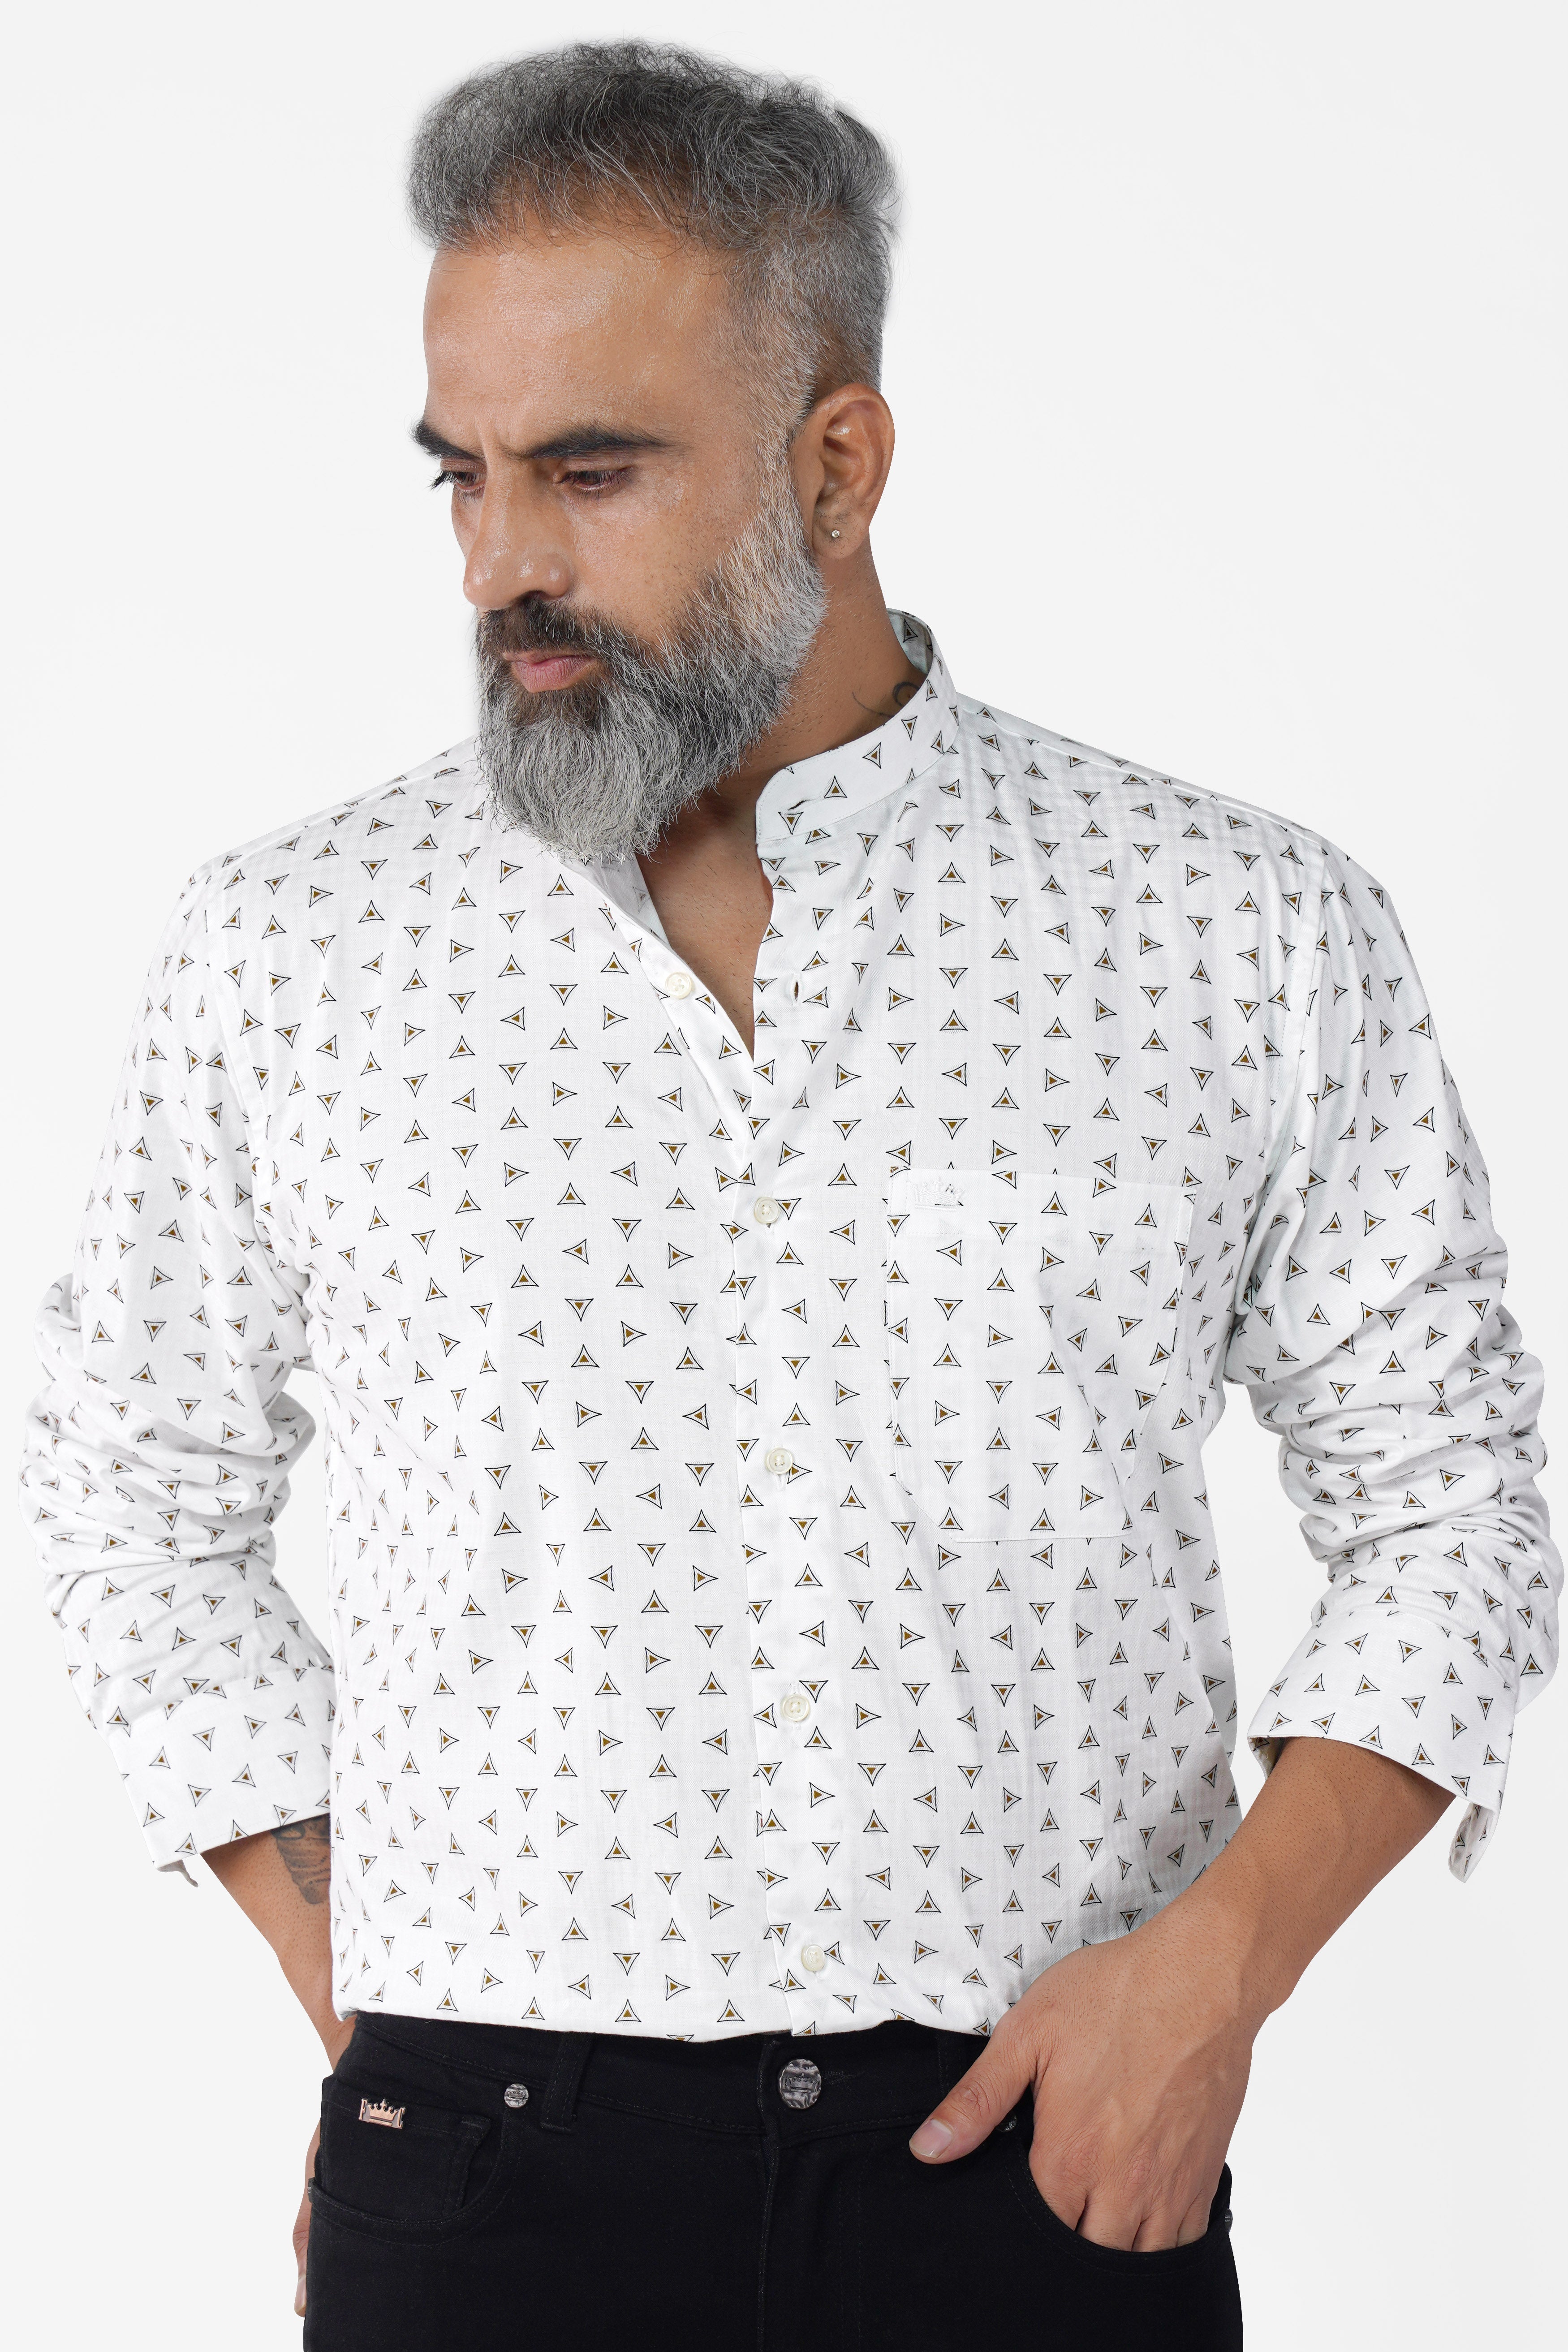 Bright White Printed Super Soft Premium Cotton Shirt